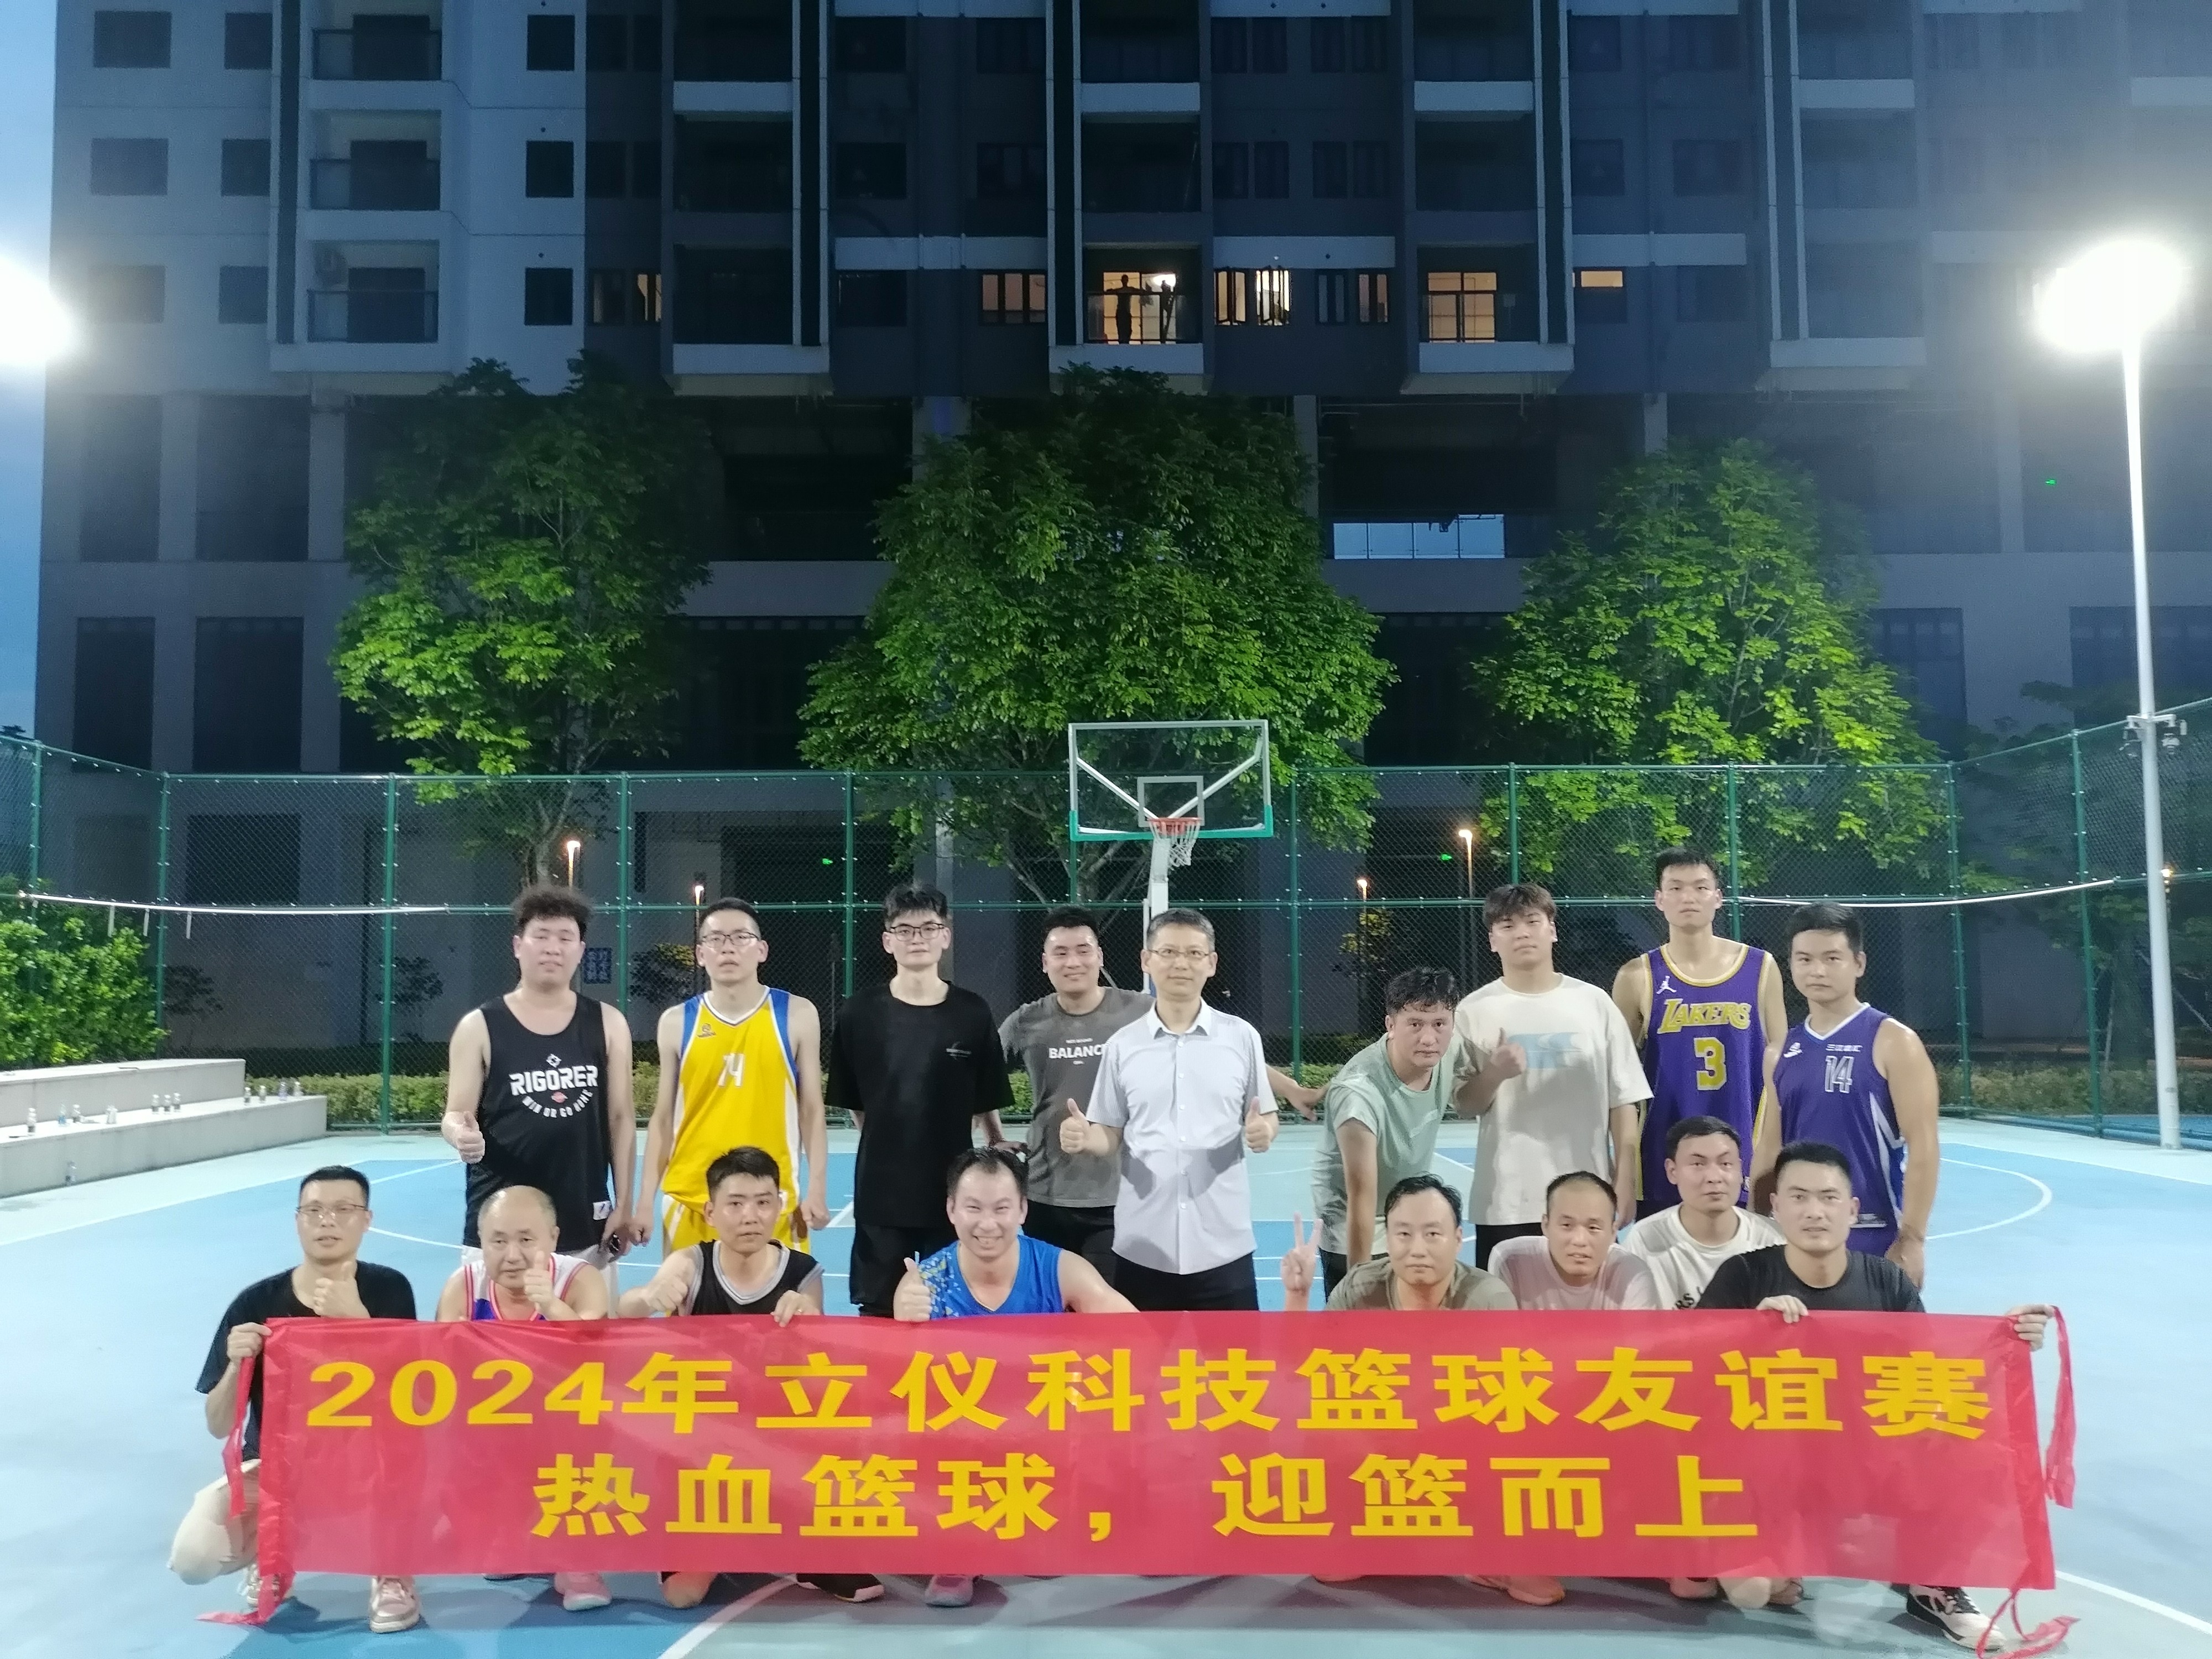 迎篮而上|深圳立仪科技有限公司首届篮球友谊赛